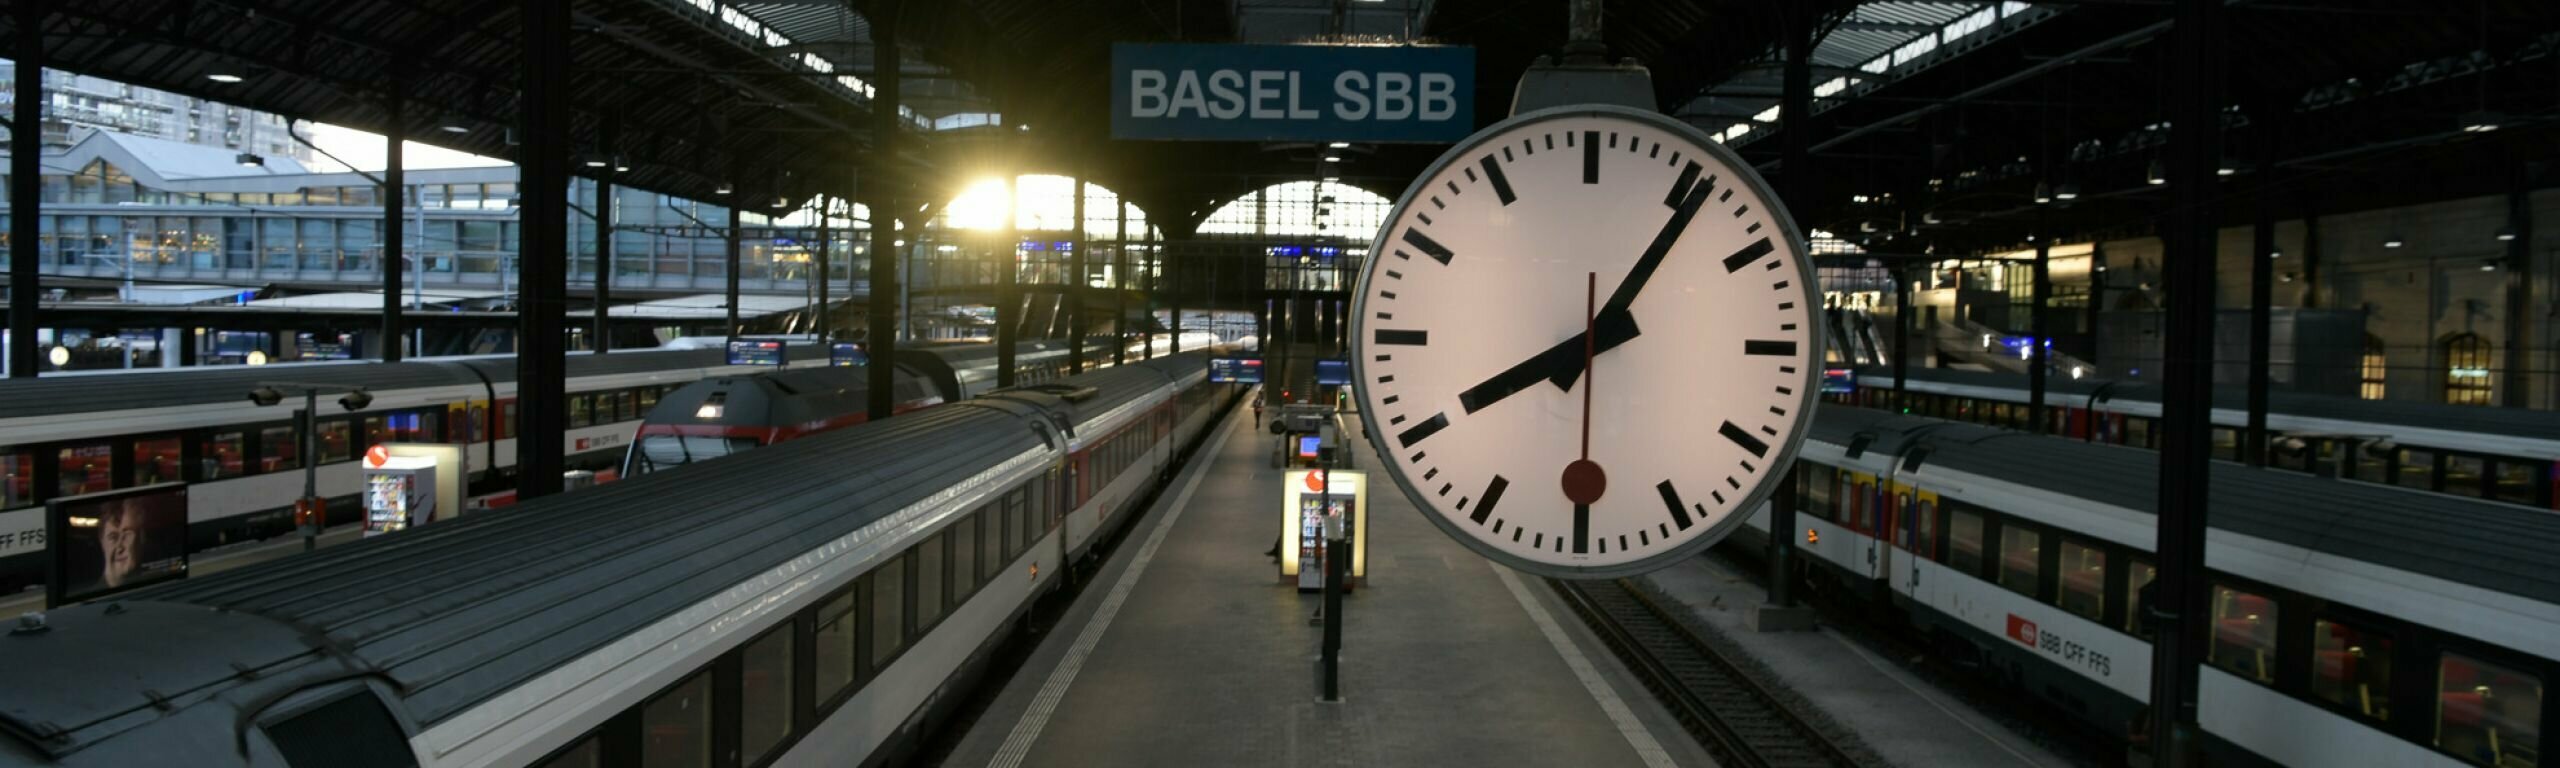 Die SBB setzt alles daran, dass die Züge pünktlich verkehren.